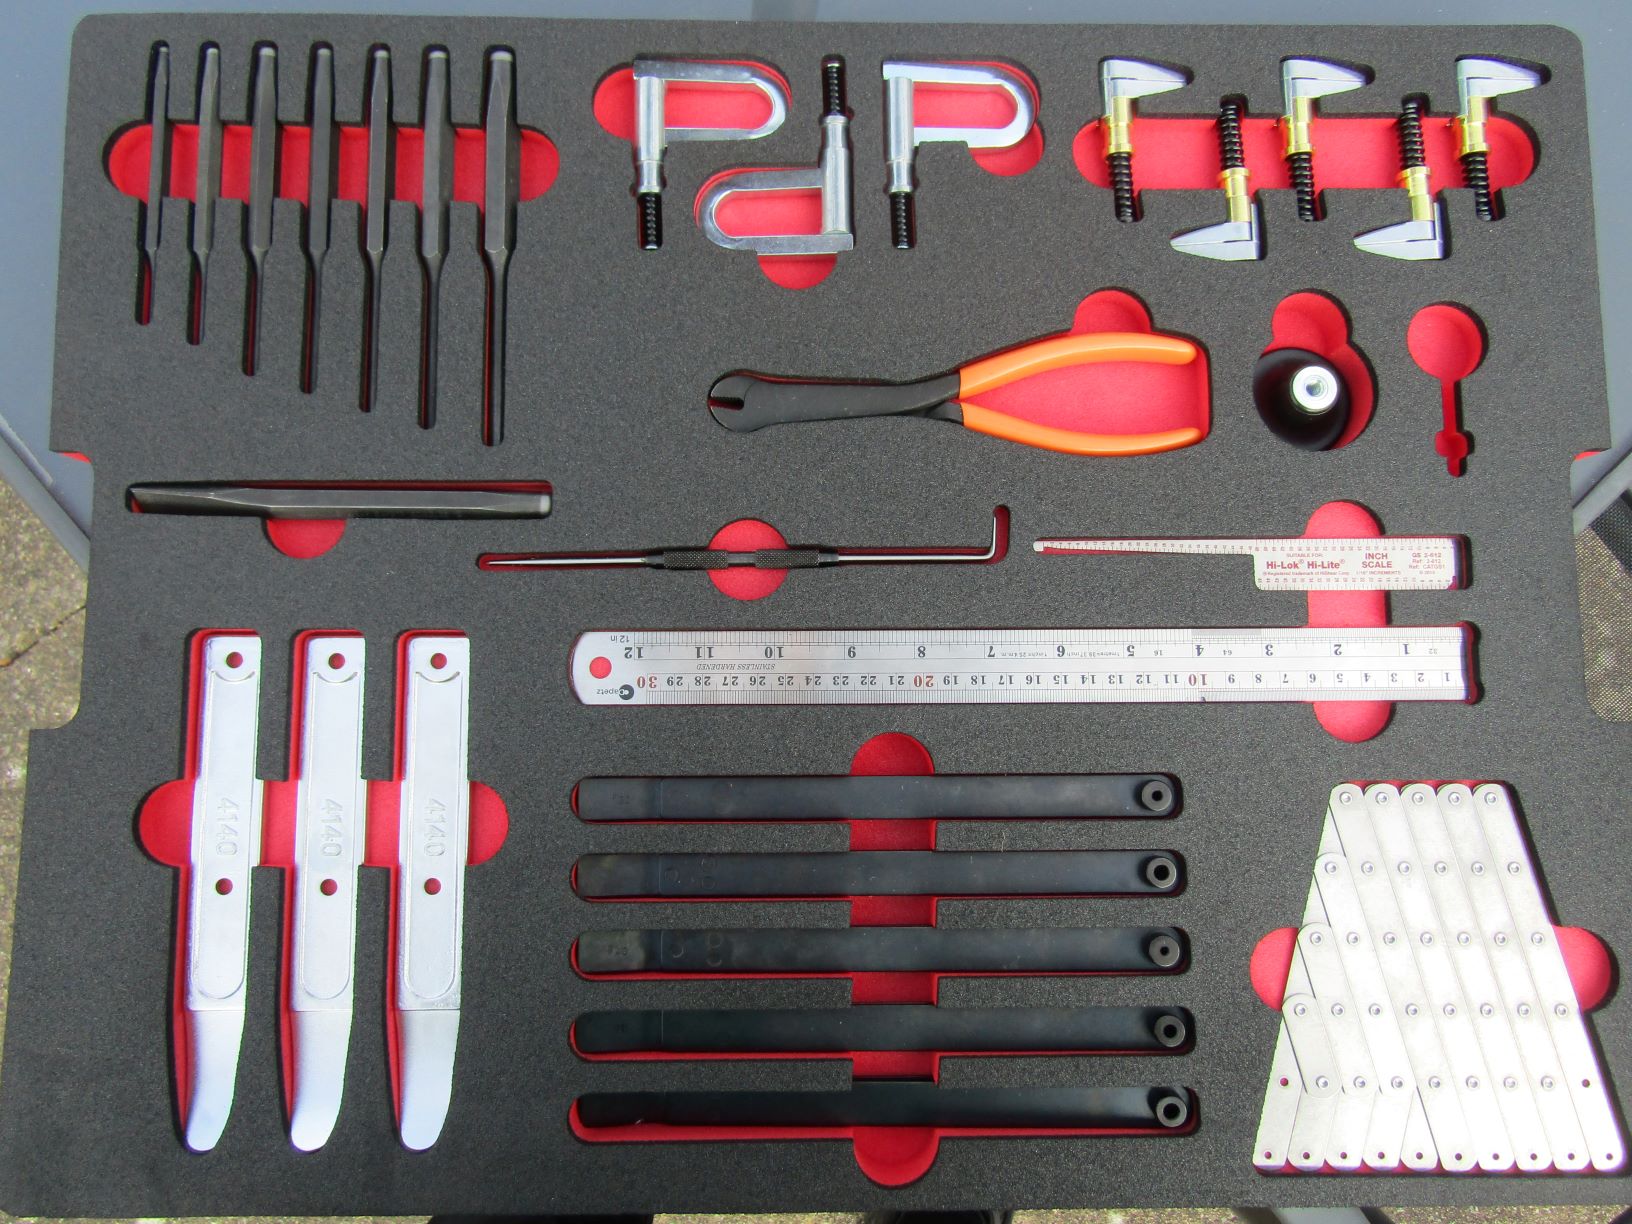 Master Sheet Metal Mechanics Tool Kit, 3X Rivet Gun Kit